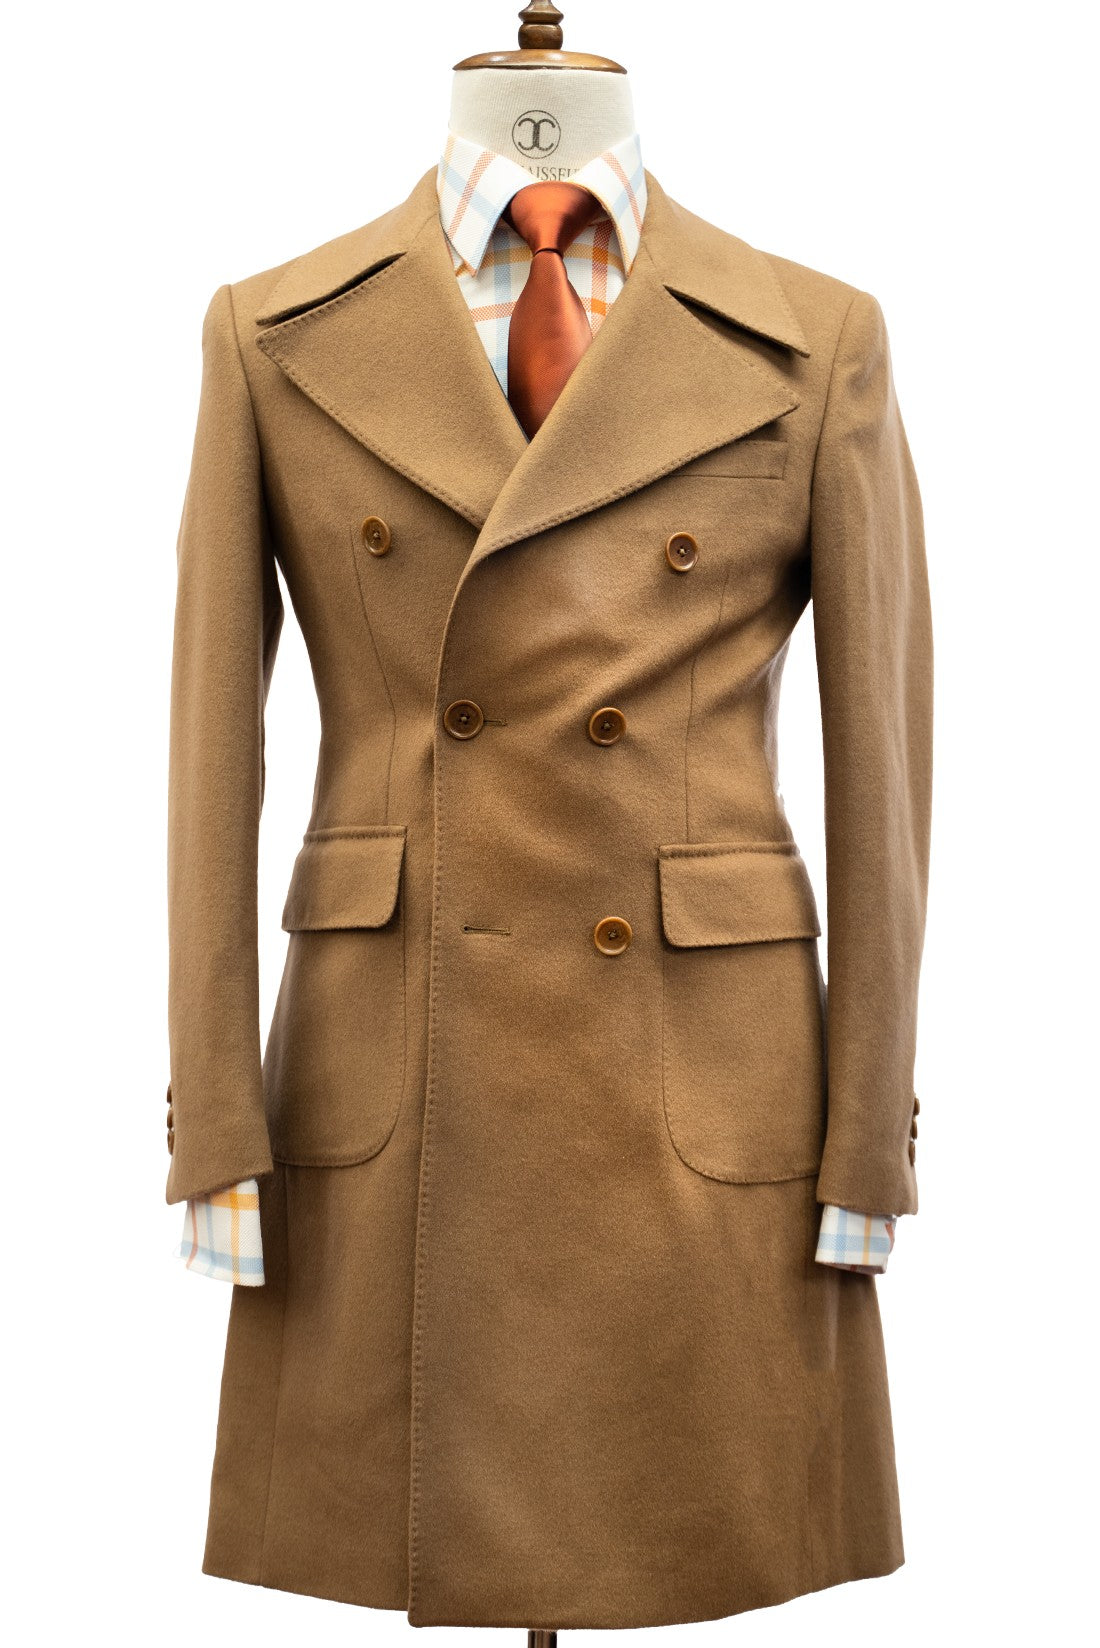 CONNAISSEUR PARIS - Desert Dust Cashmere Wool Slim Fit Overcoat